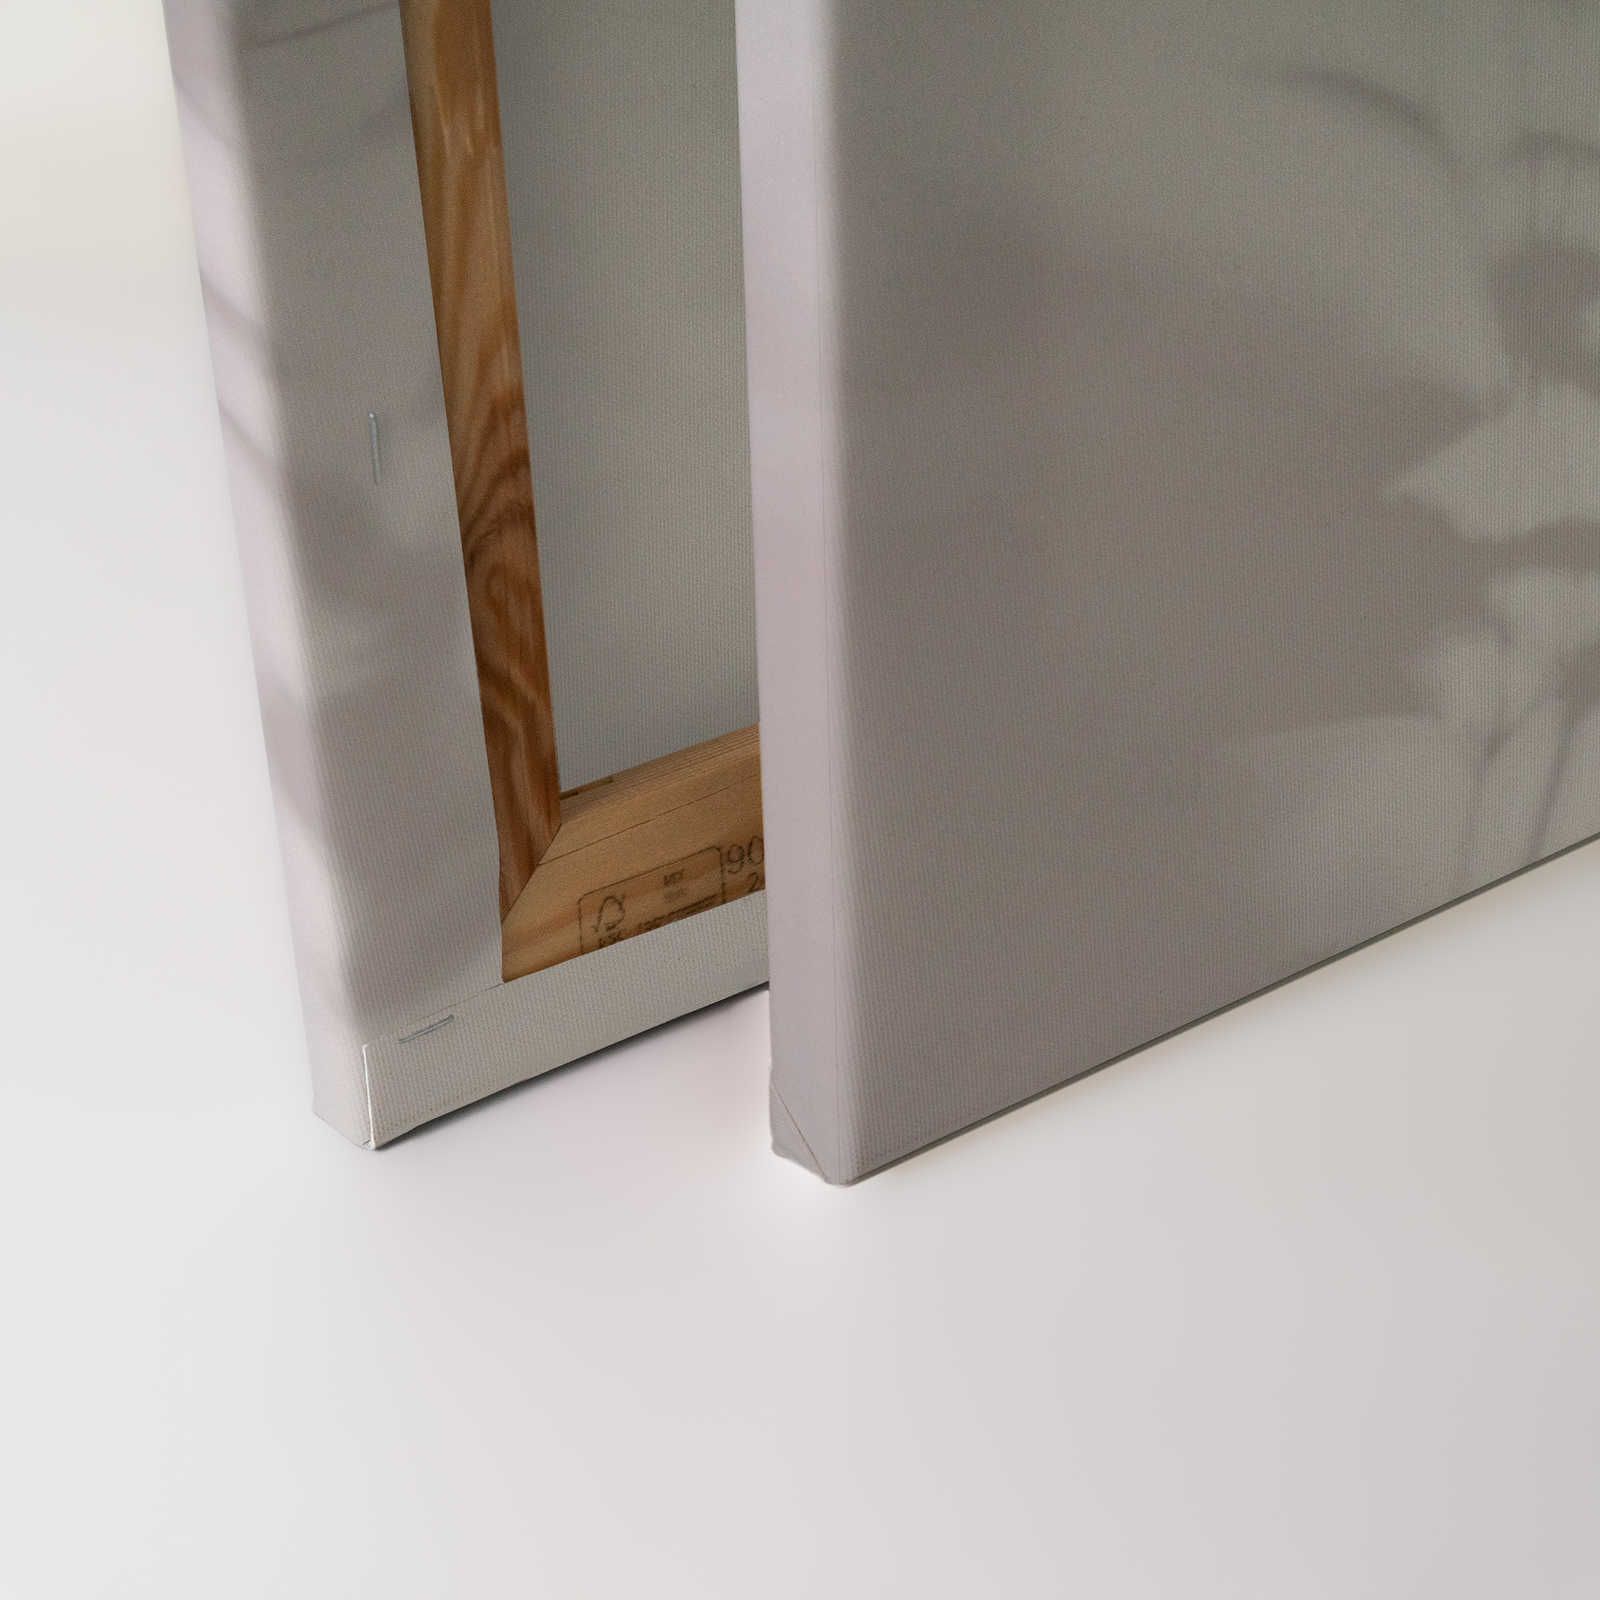             Camera d'ombra 2 - Quadro su tela naturale grigio e bianco, disegno sbiadito - 0,90 m x 0,60 m
        